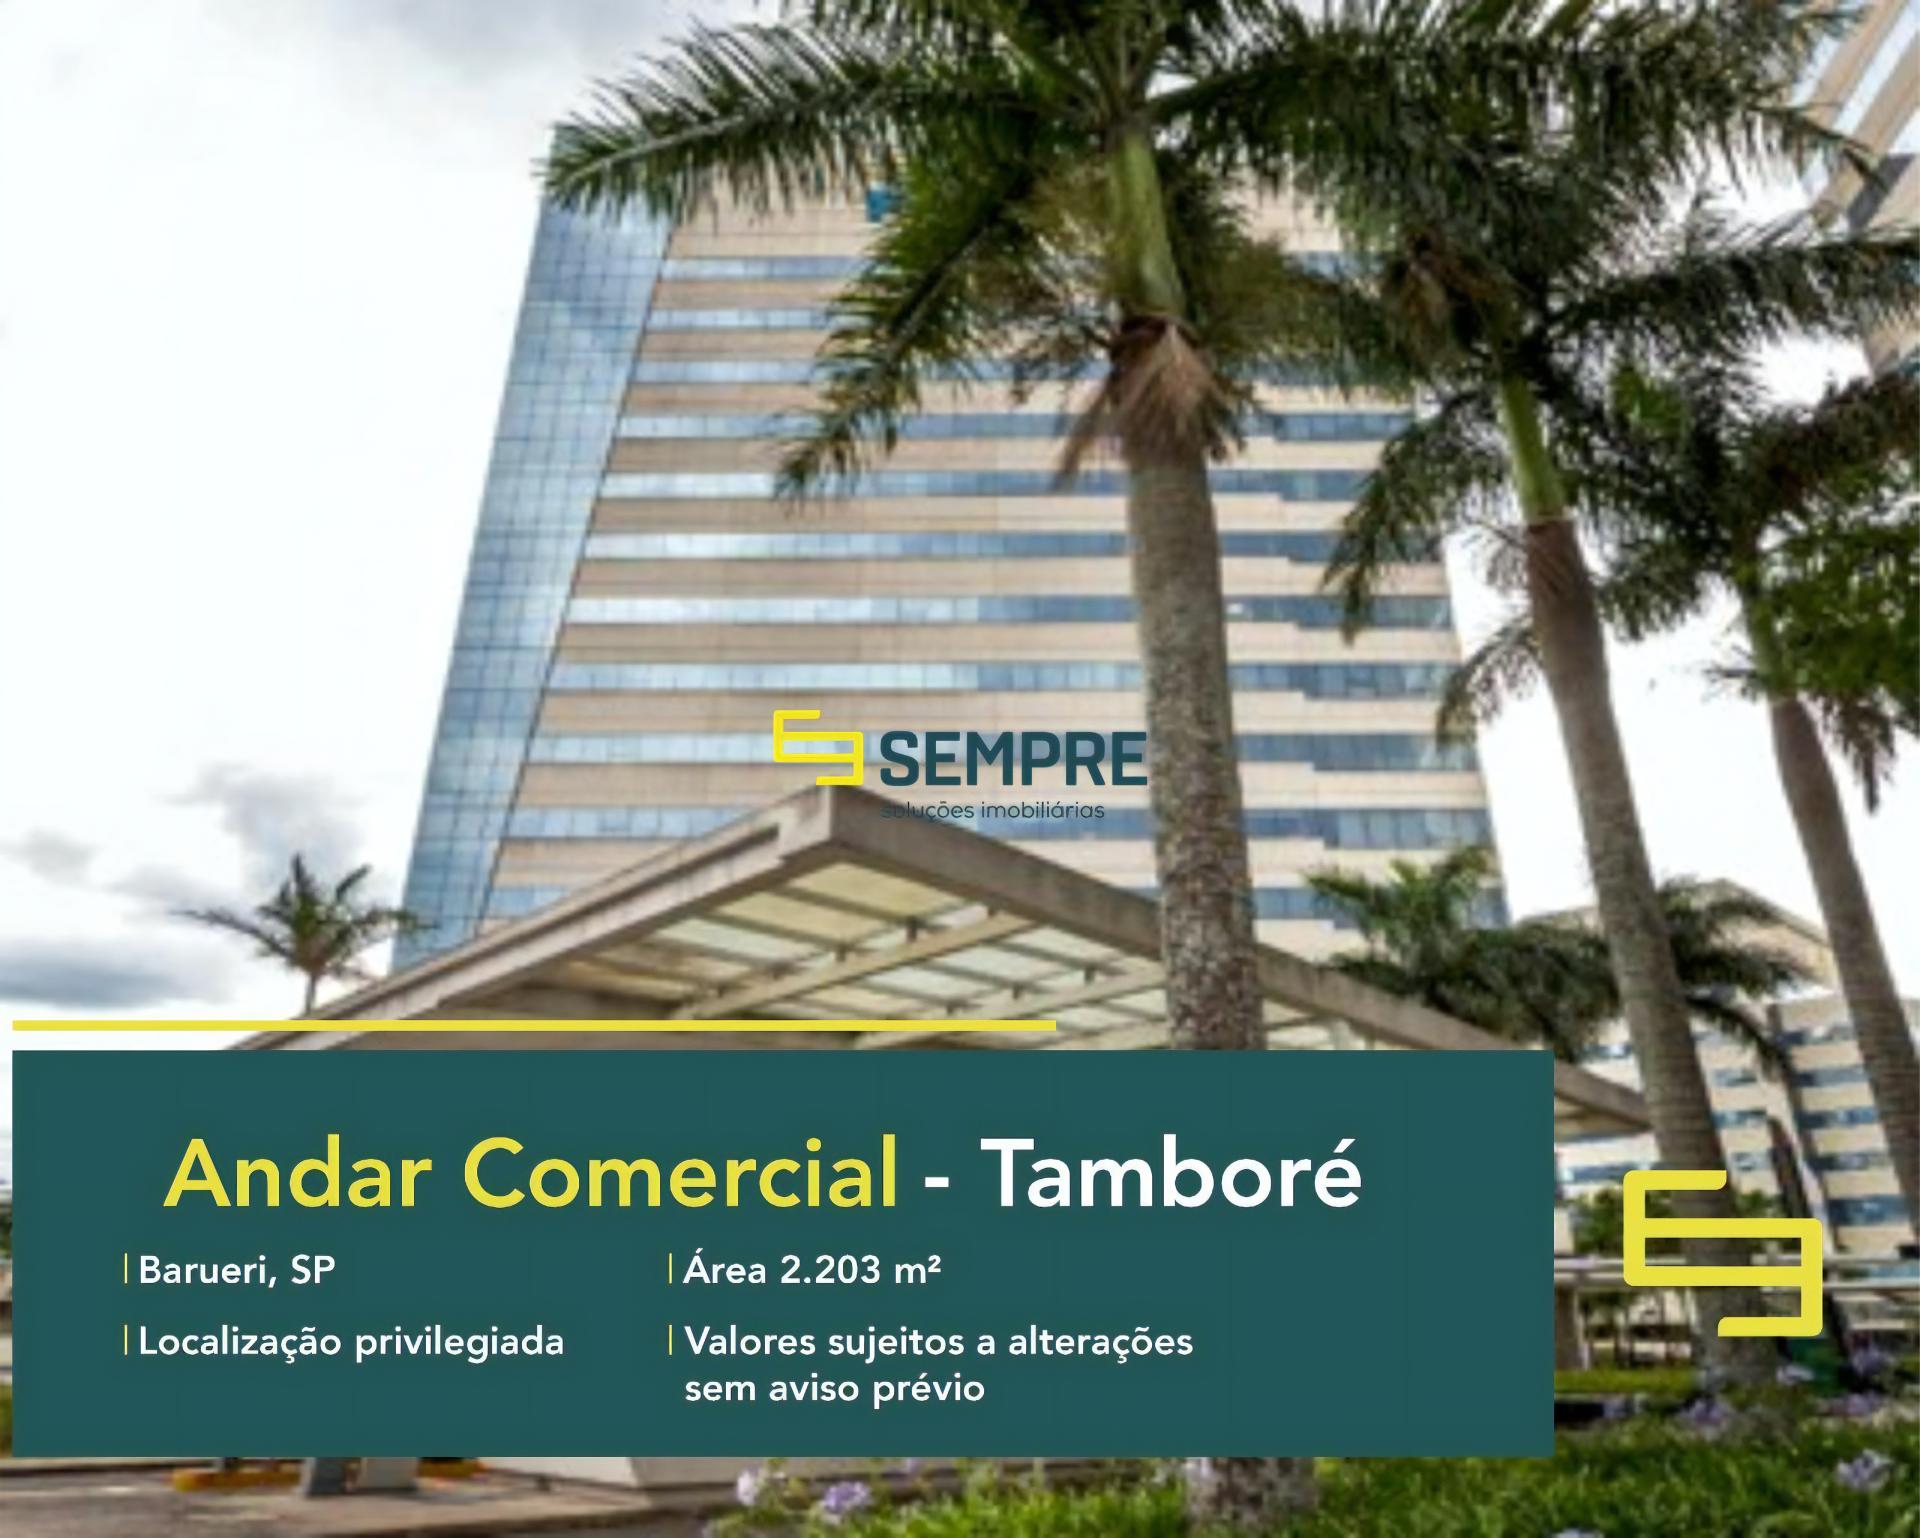 Laje corporativa no bairro Tamboré para locação em São Paulo, excelente localização. O estabelecimento comercial conta com área de 2.203 m².